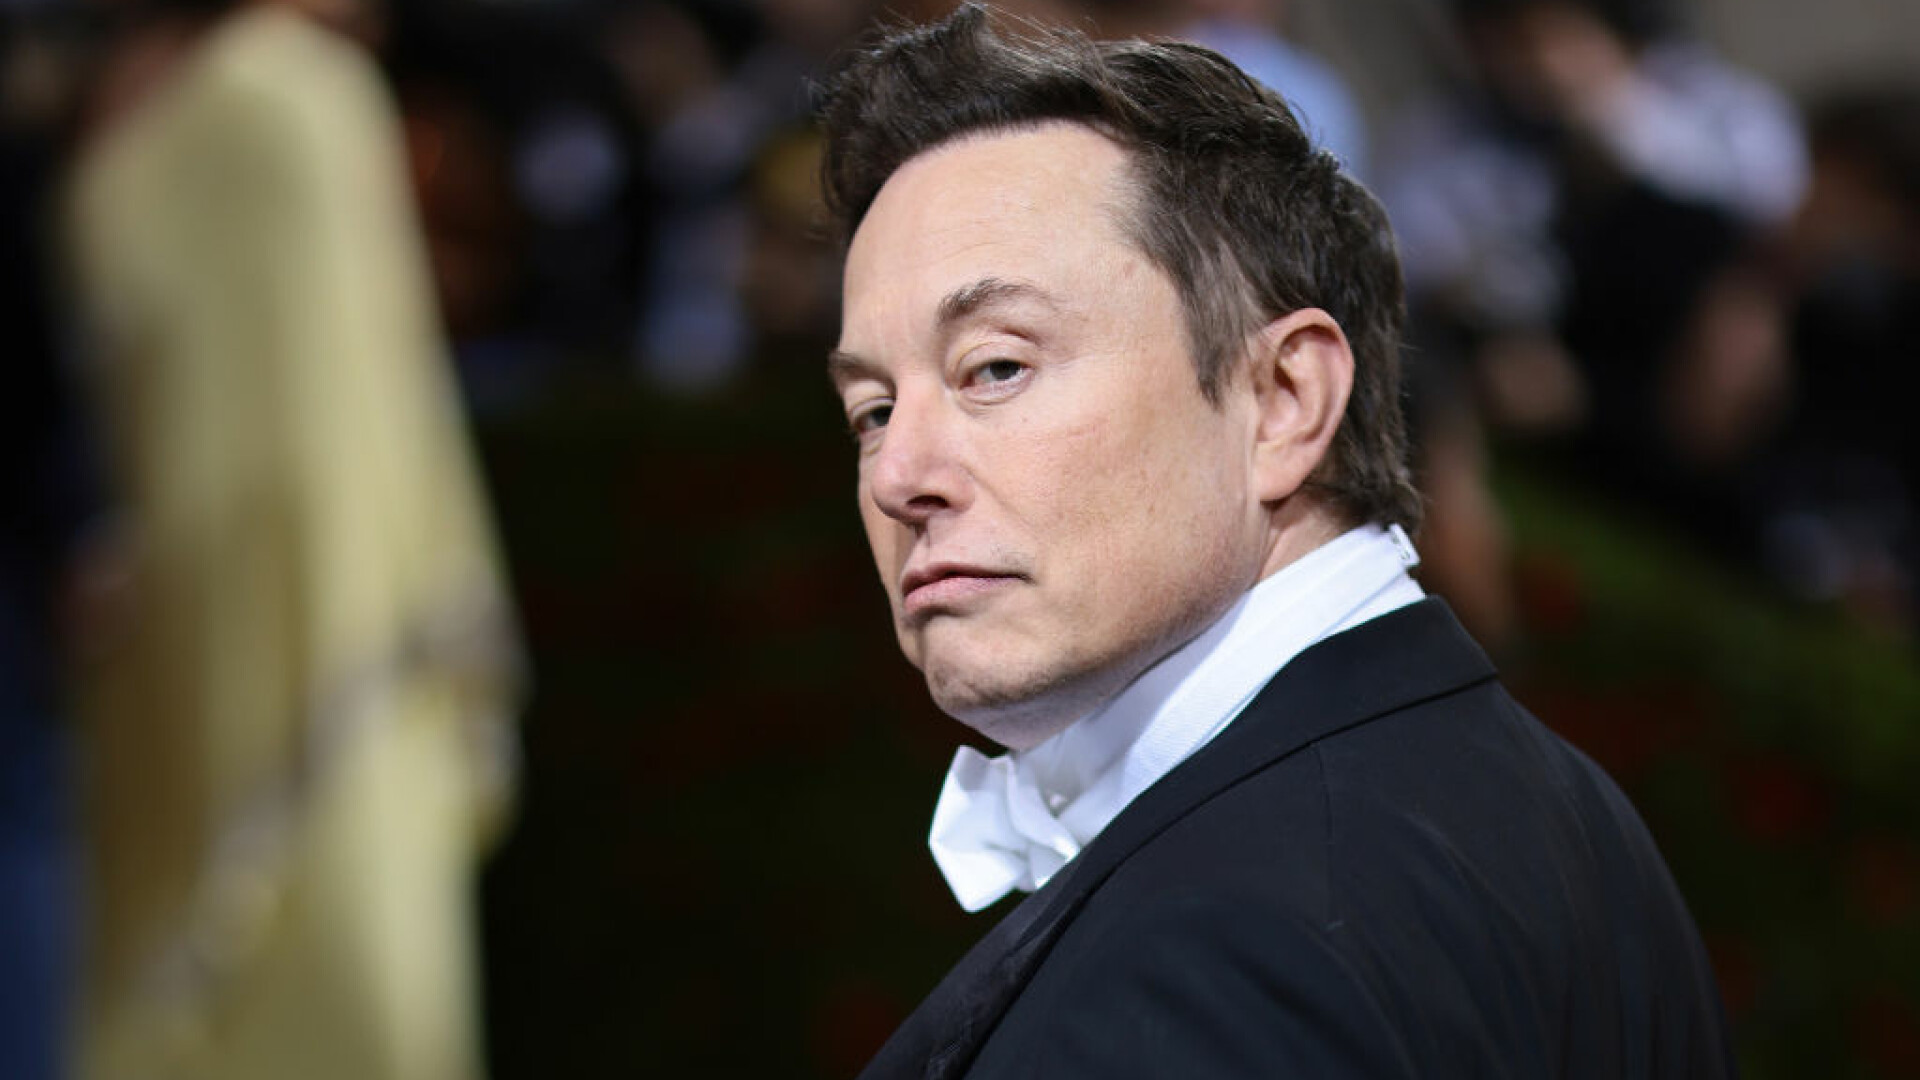 Elon Musk neagă acuzațiile că ar fi hărțuit sexual o însoțitoare de zbor: ”Am o provocare pentru această persoană mincinoasă”